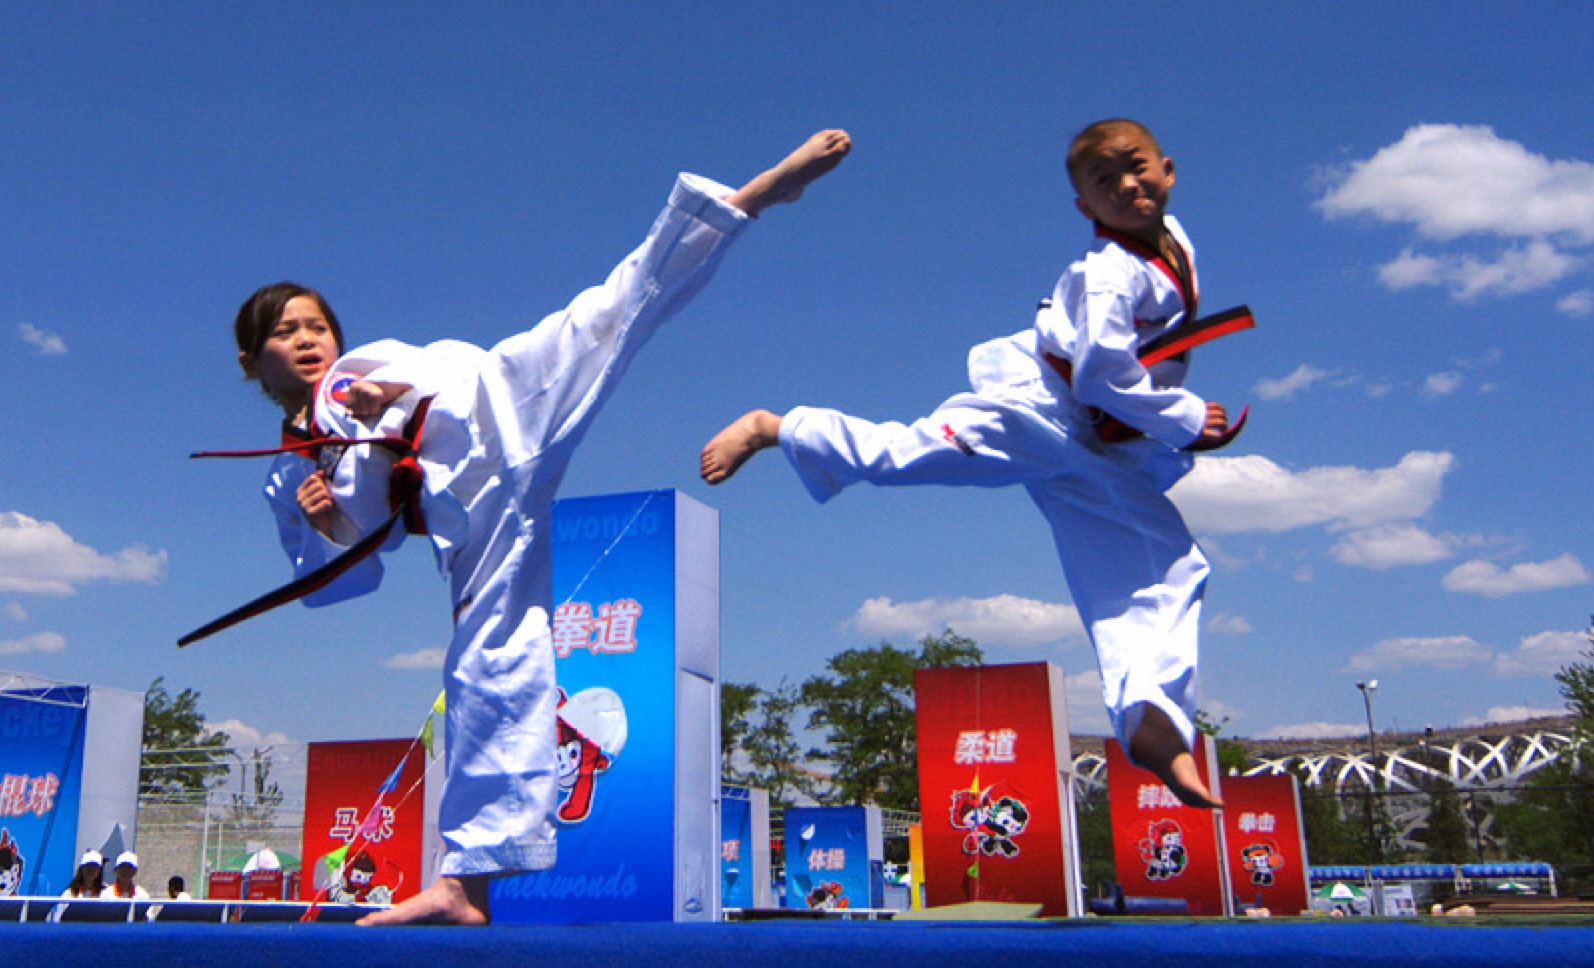 5 Amazing Benefits Of Taekwondo